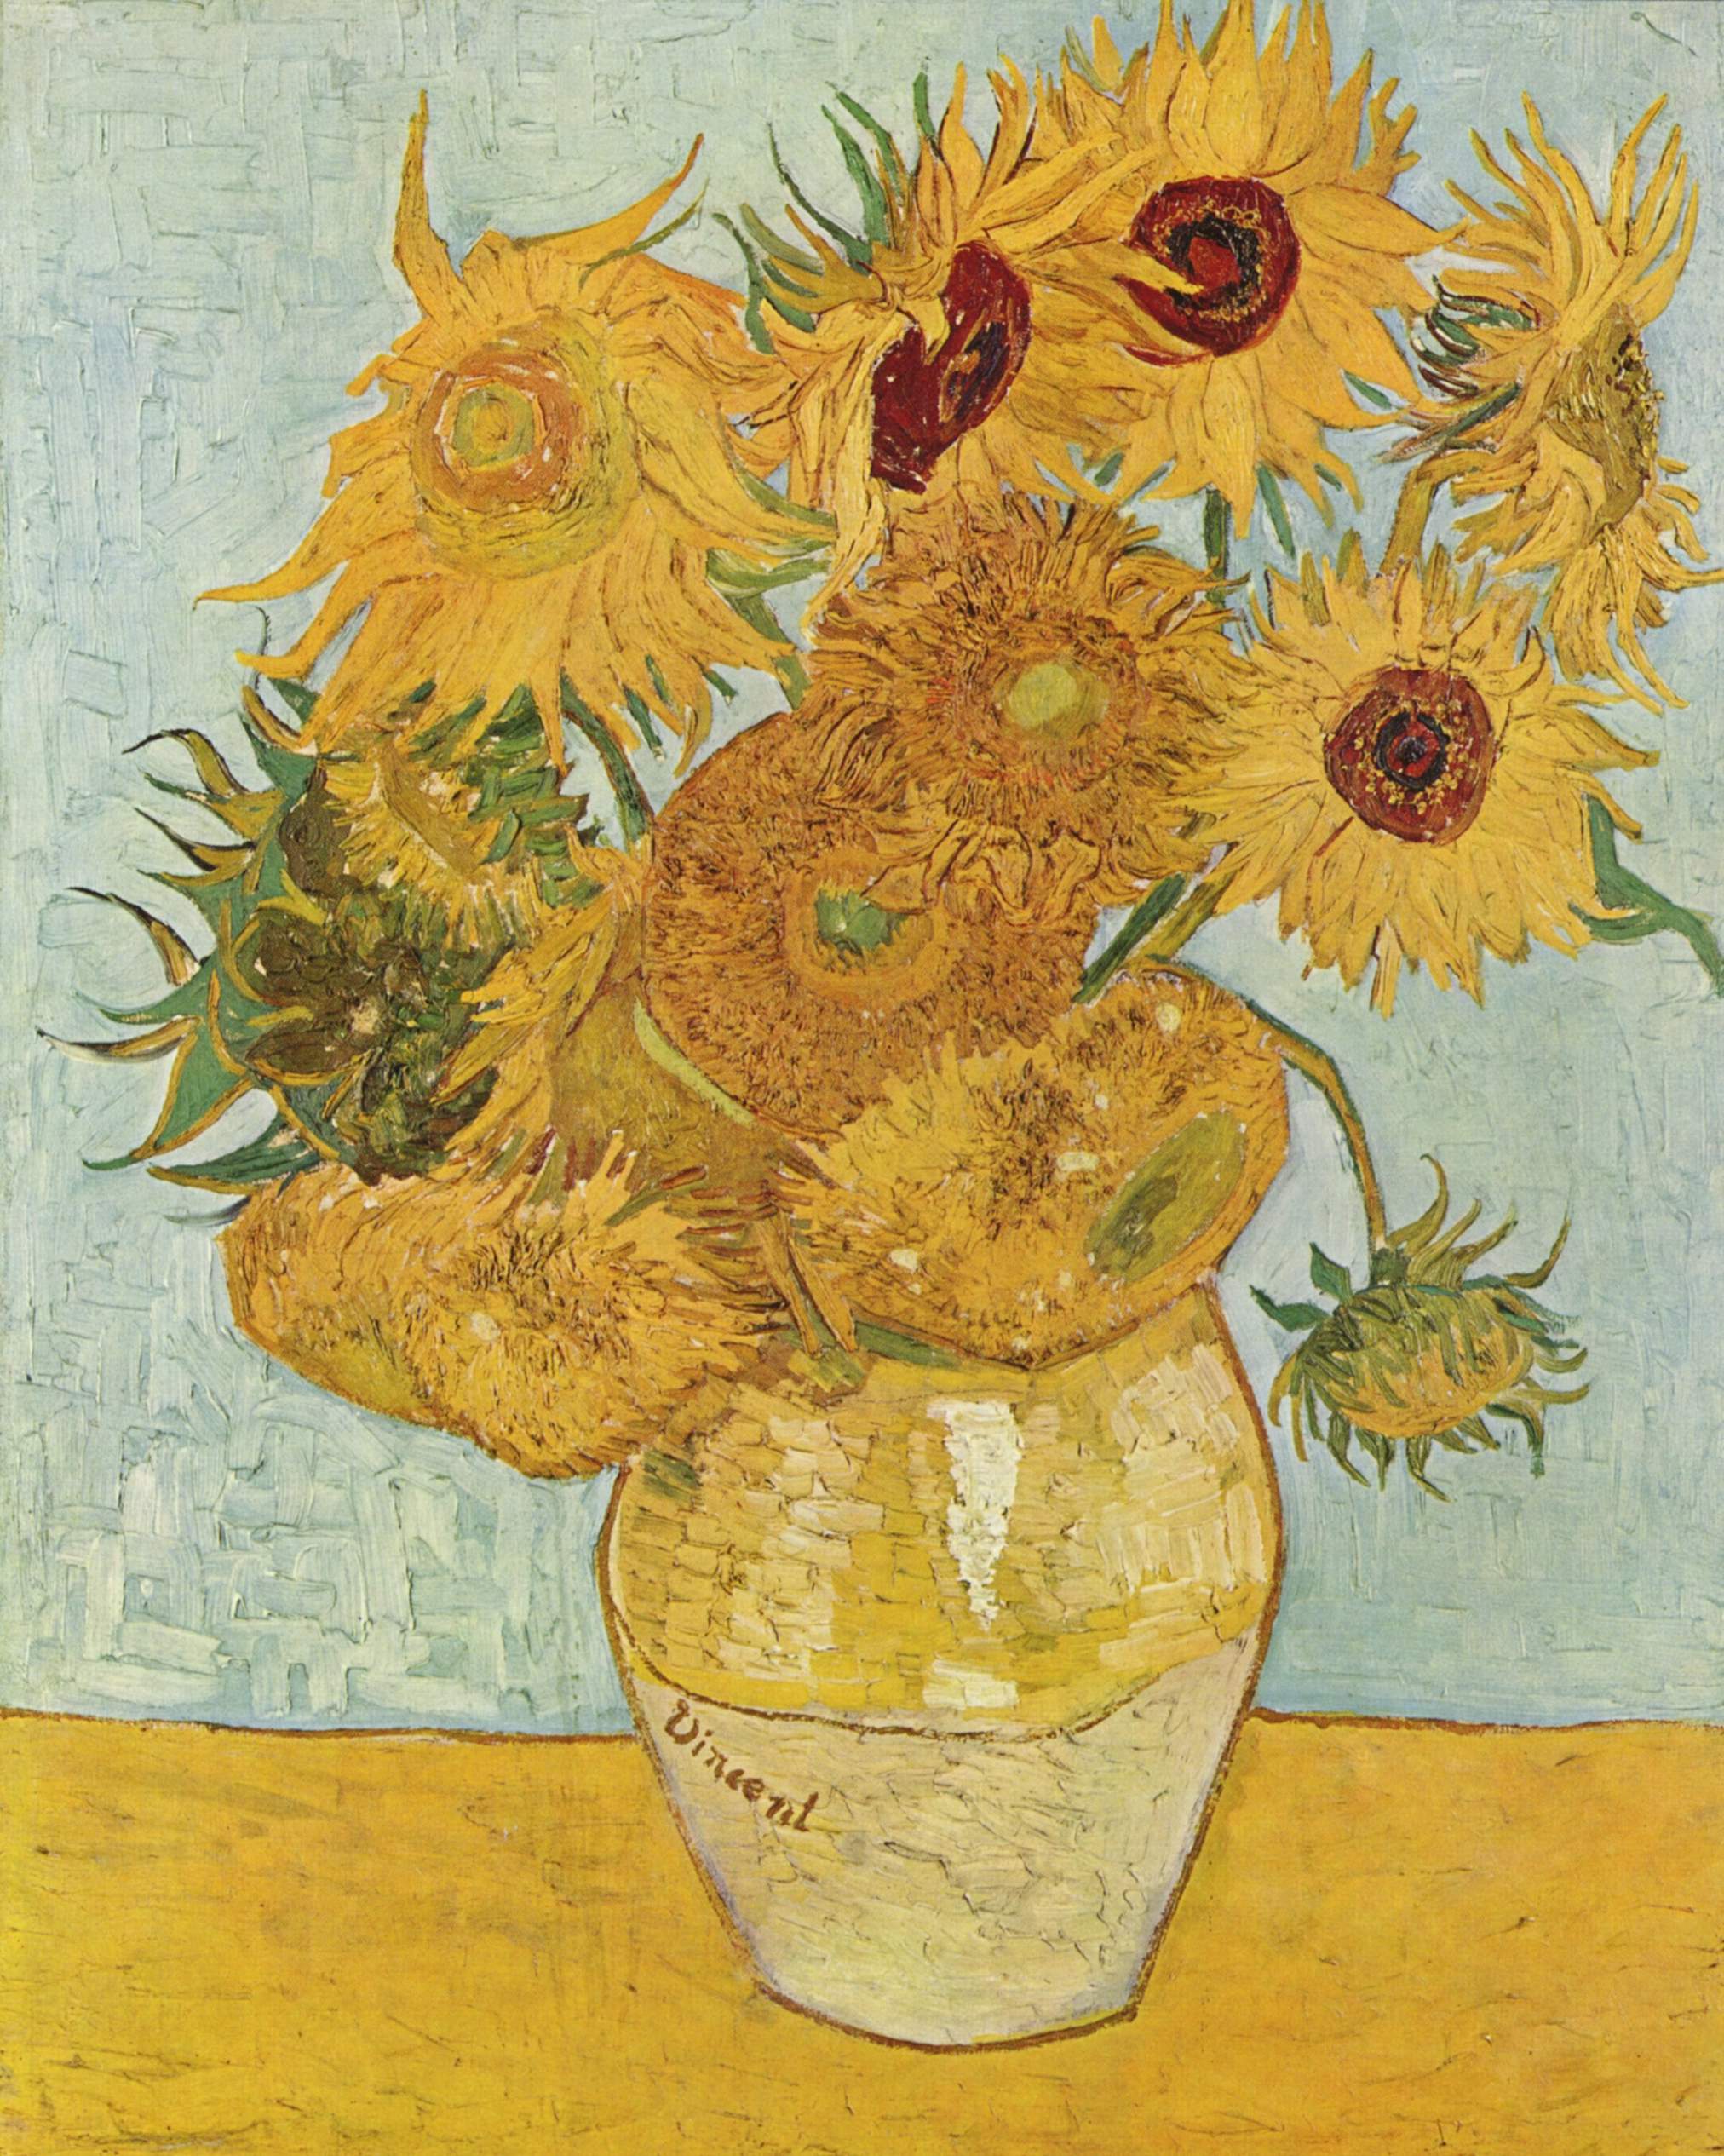 La imagen muestra un jarrón amarillo sobre una mesa y un fondo azul, que tiene varios girasoles amarillos